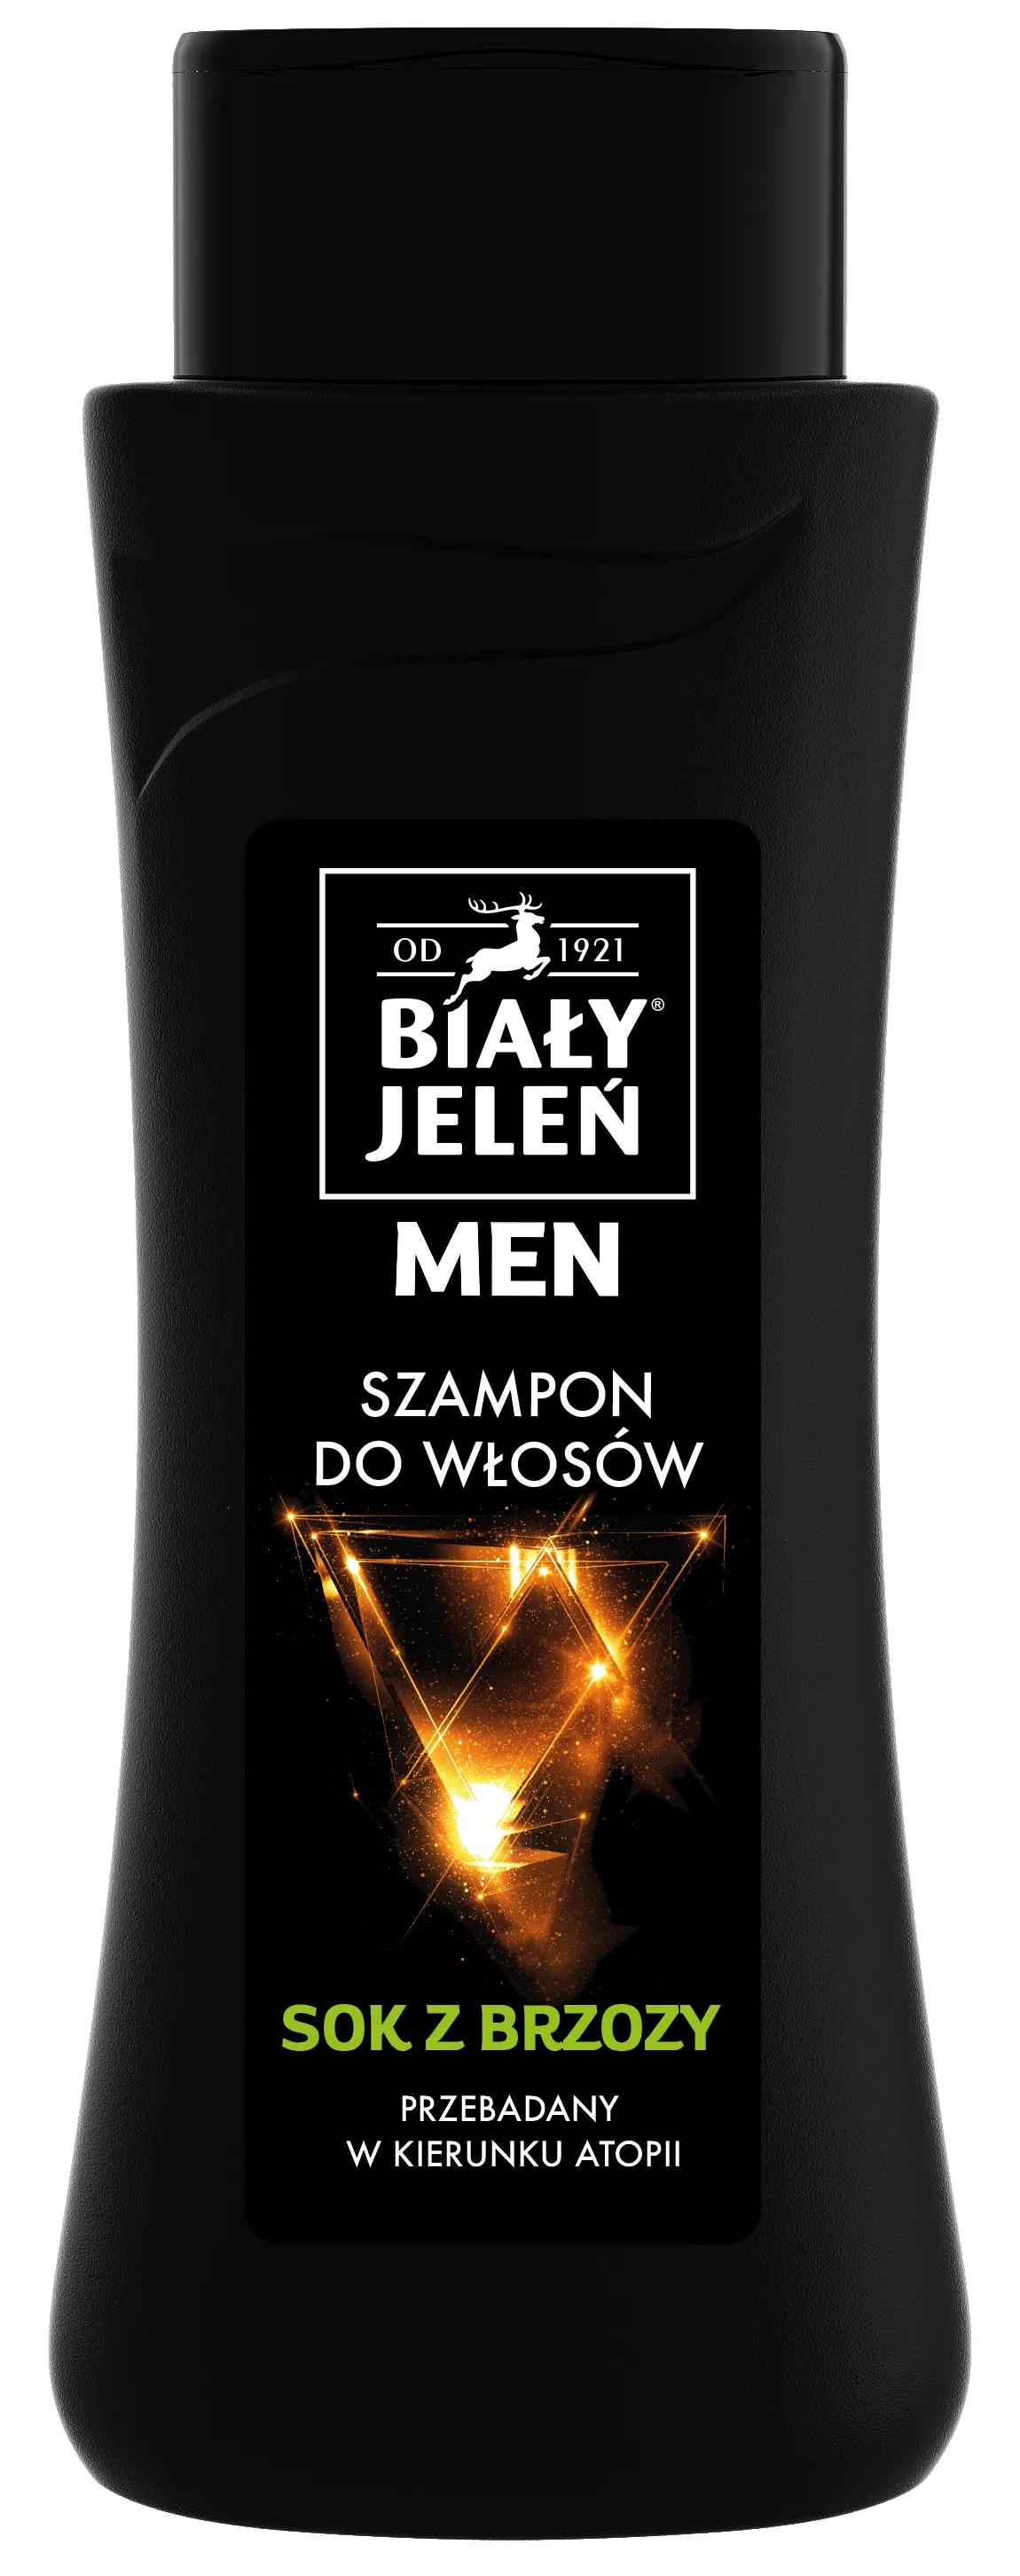 Biały Jeleń Men, hipoalergiczny szampon do włosów brzoza, 300 ml